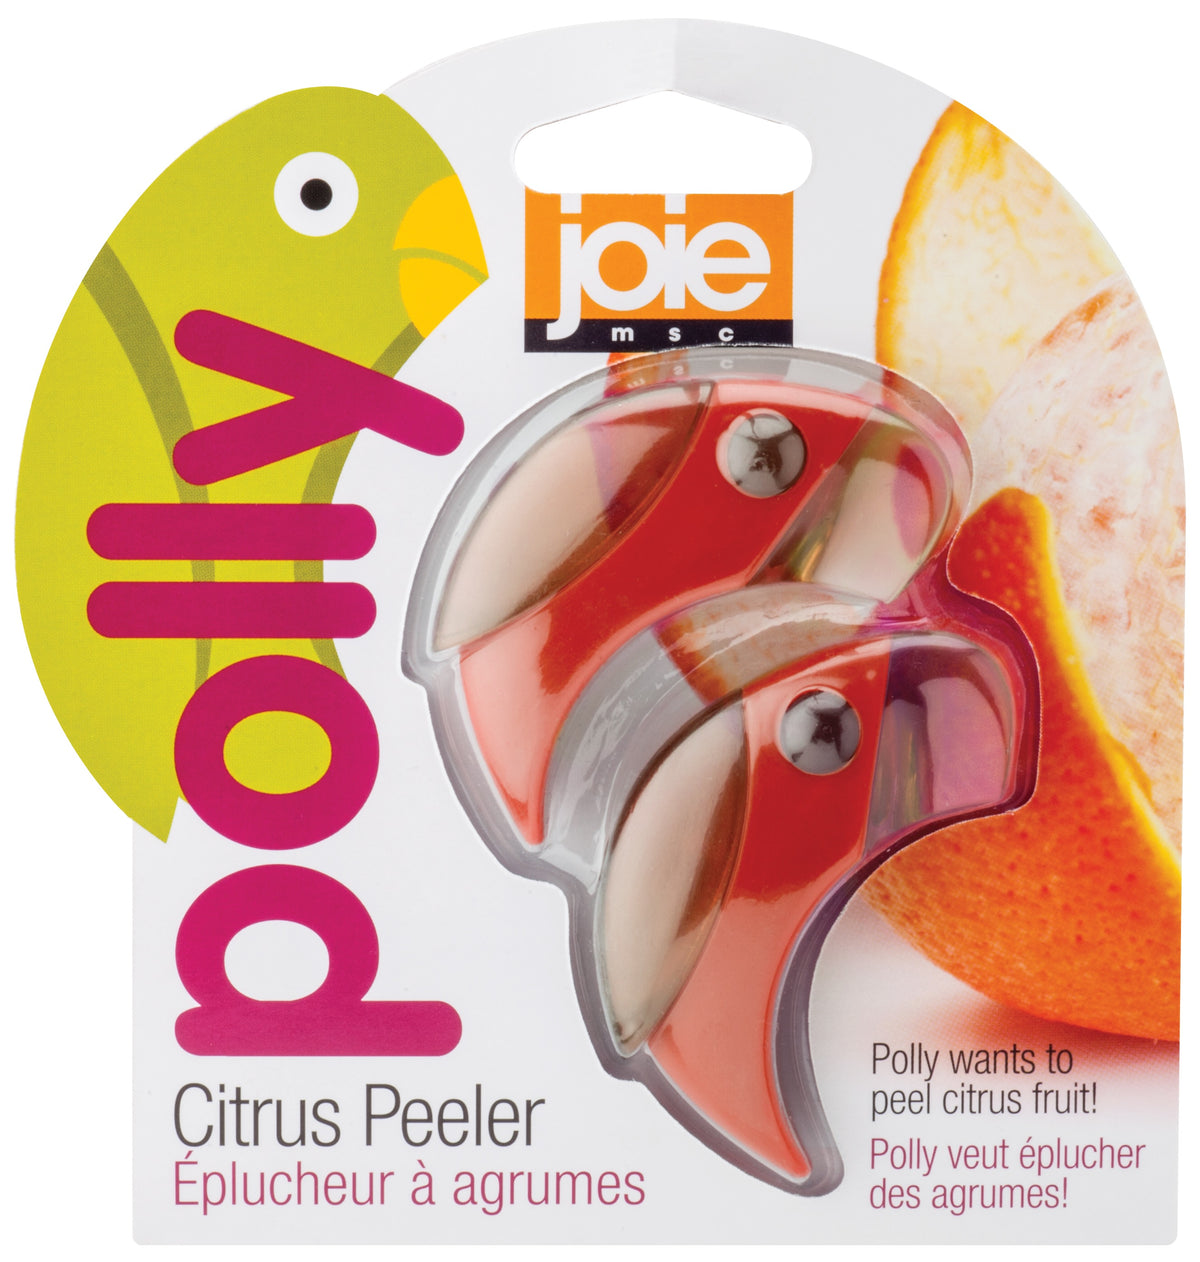 Joie MSC 26611 Parrot Citrus Peeler, Assorted Colors